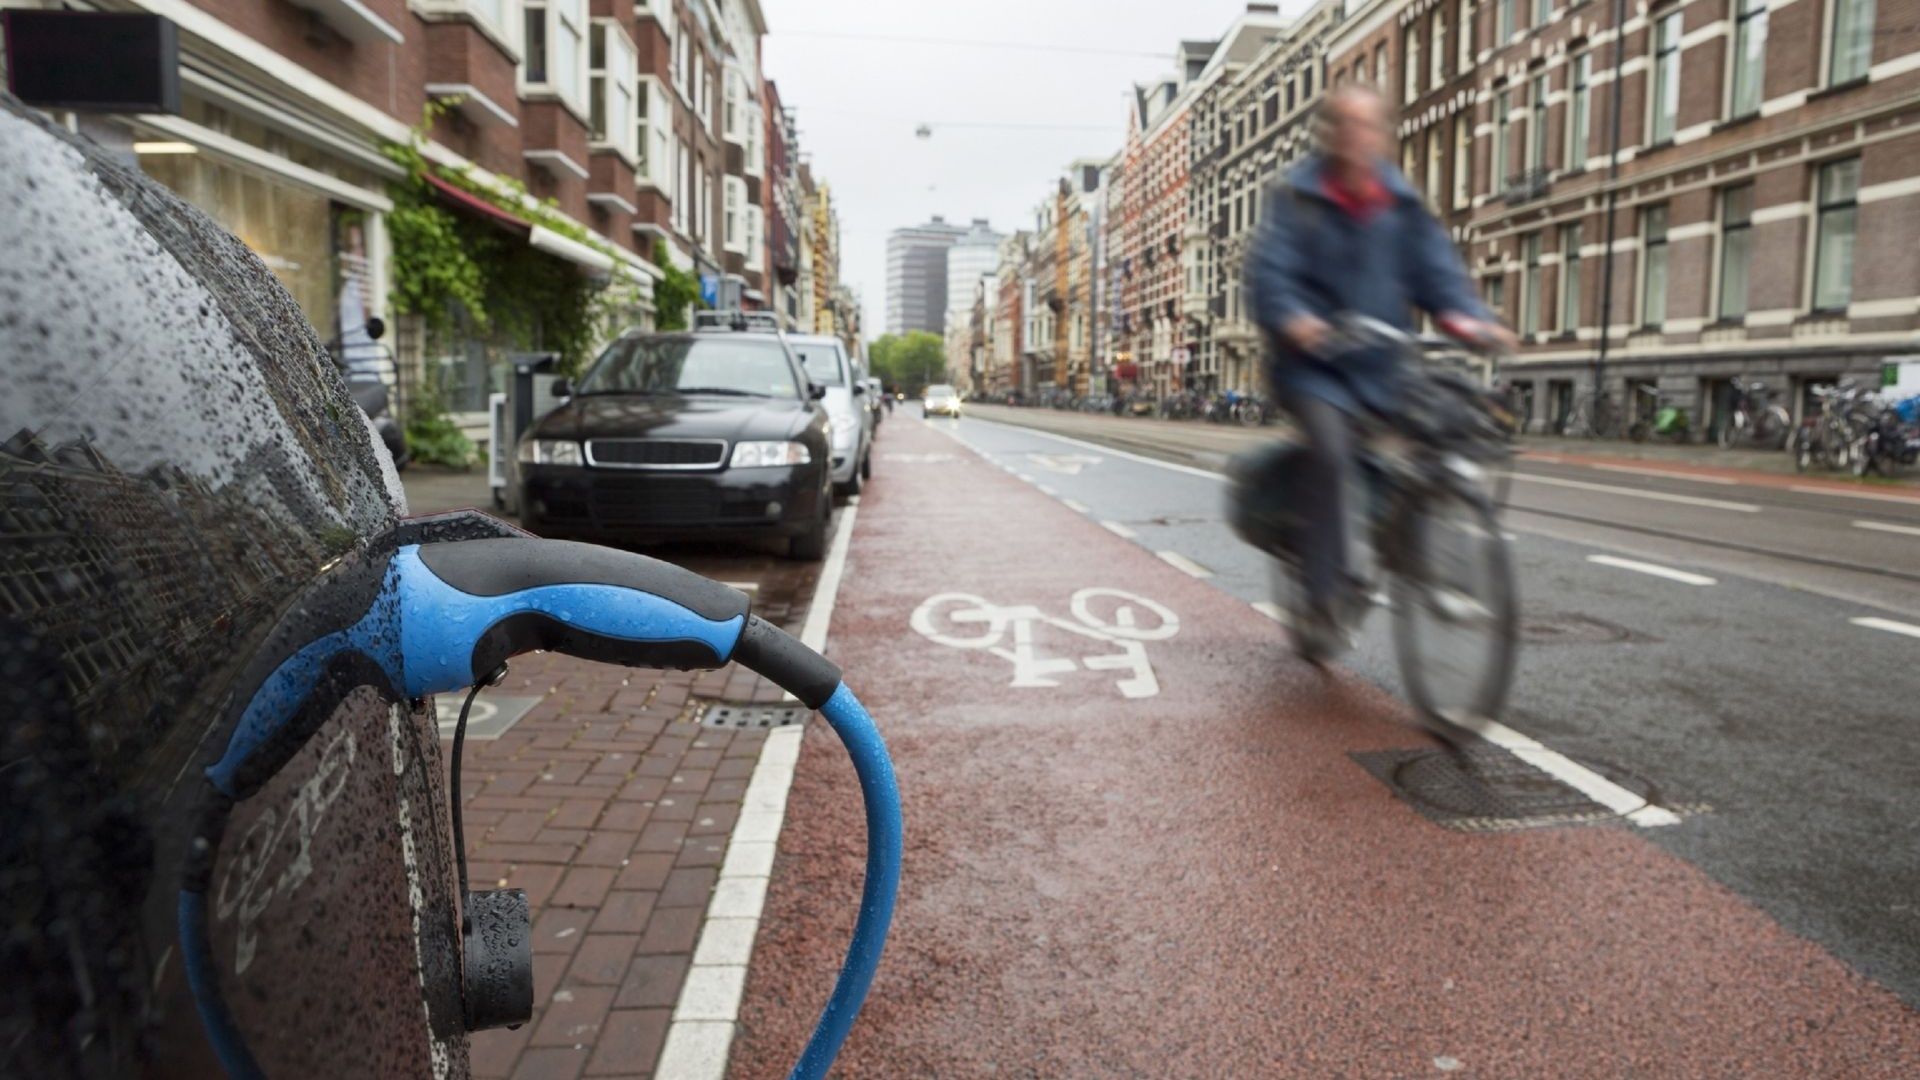 La voiture à moteur thermique va peu à peu laisser la place au tout électrique dans les grandes villes européennes (ici à Amsterdam).